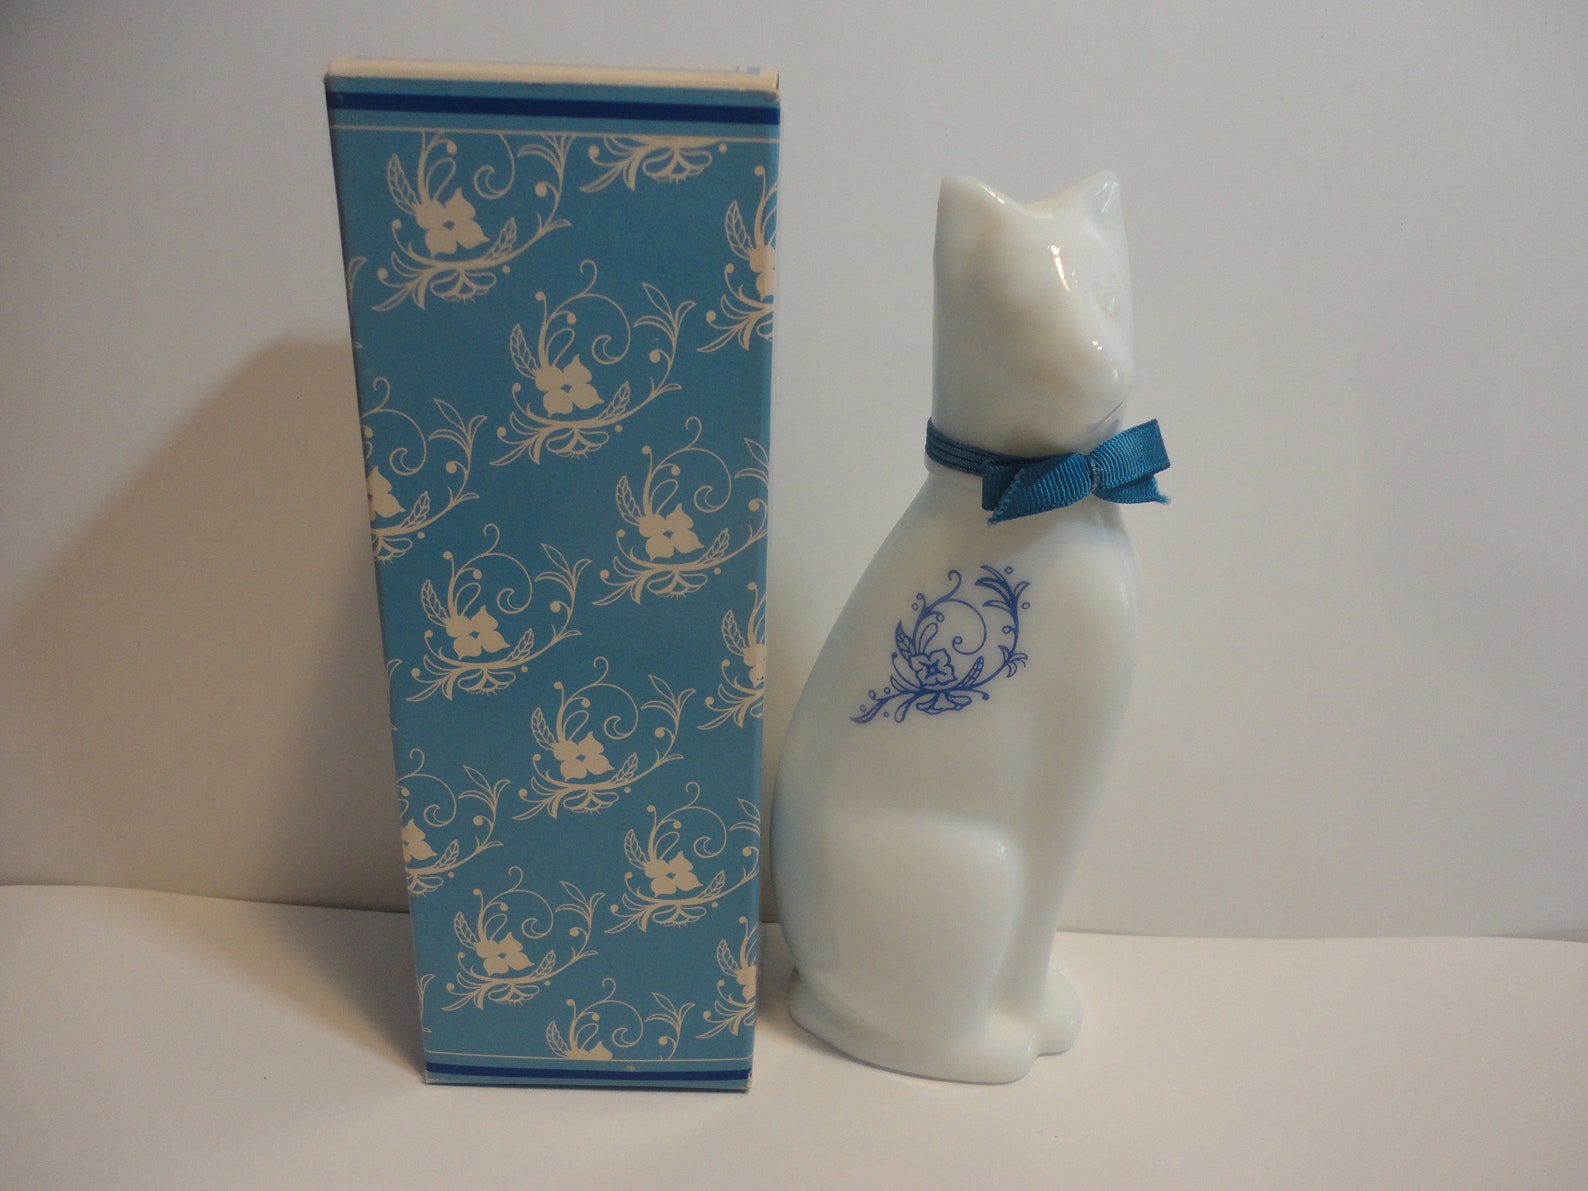 Avon white cat perfume bottle